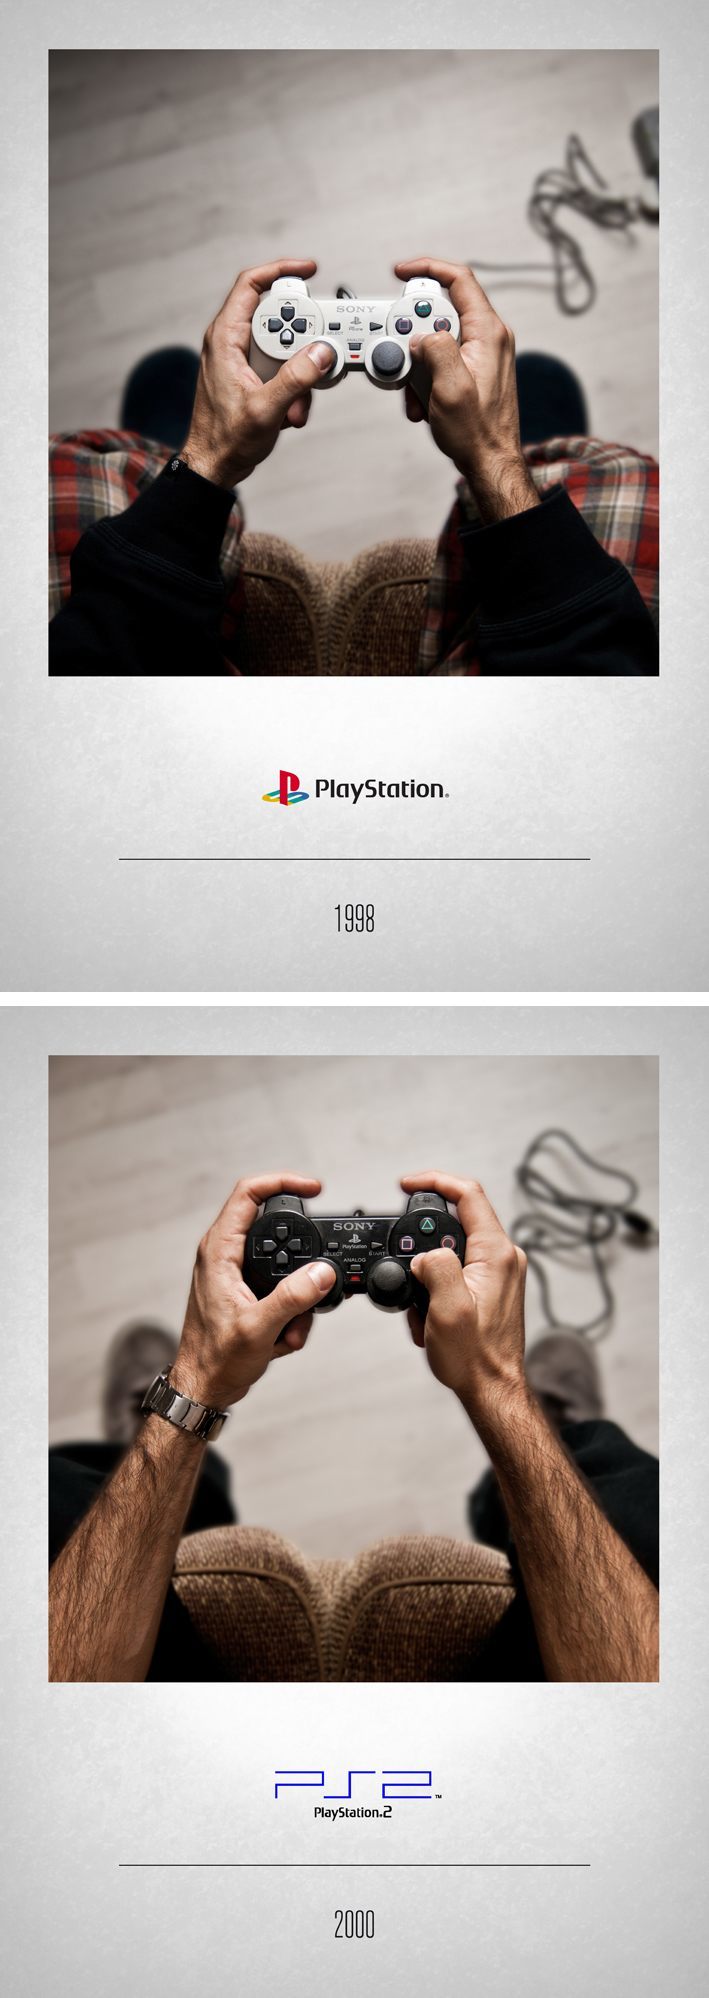 A evolução dos controles de video-game